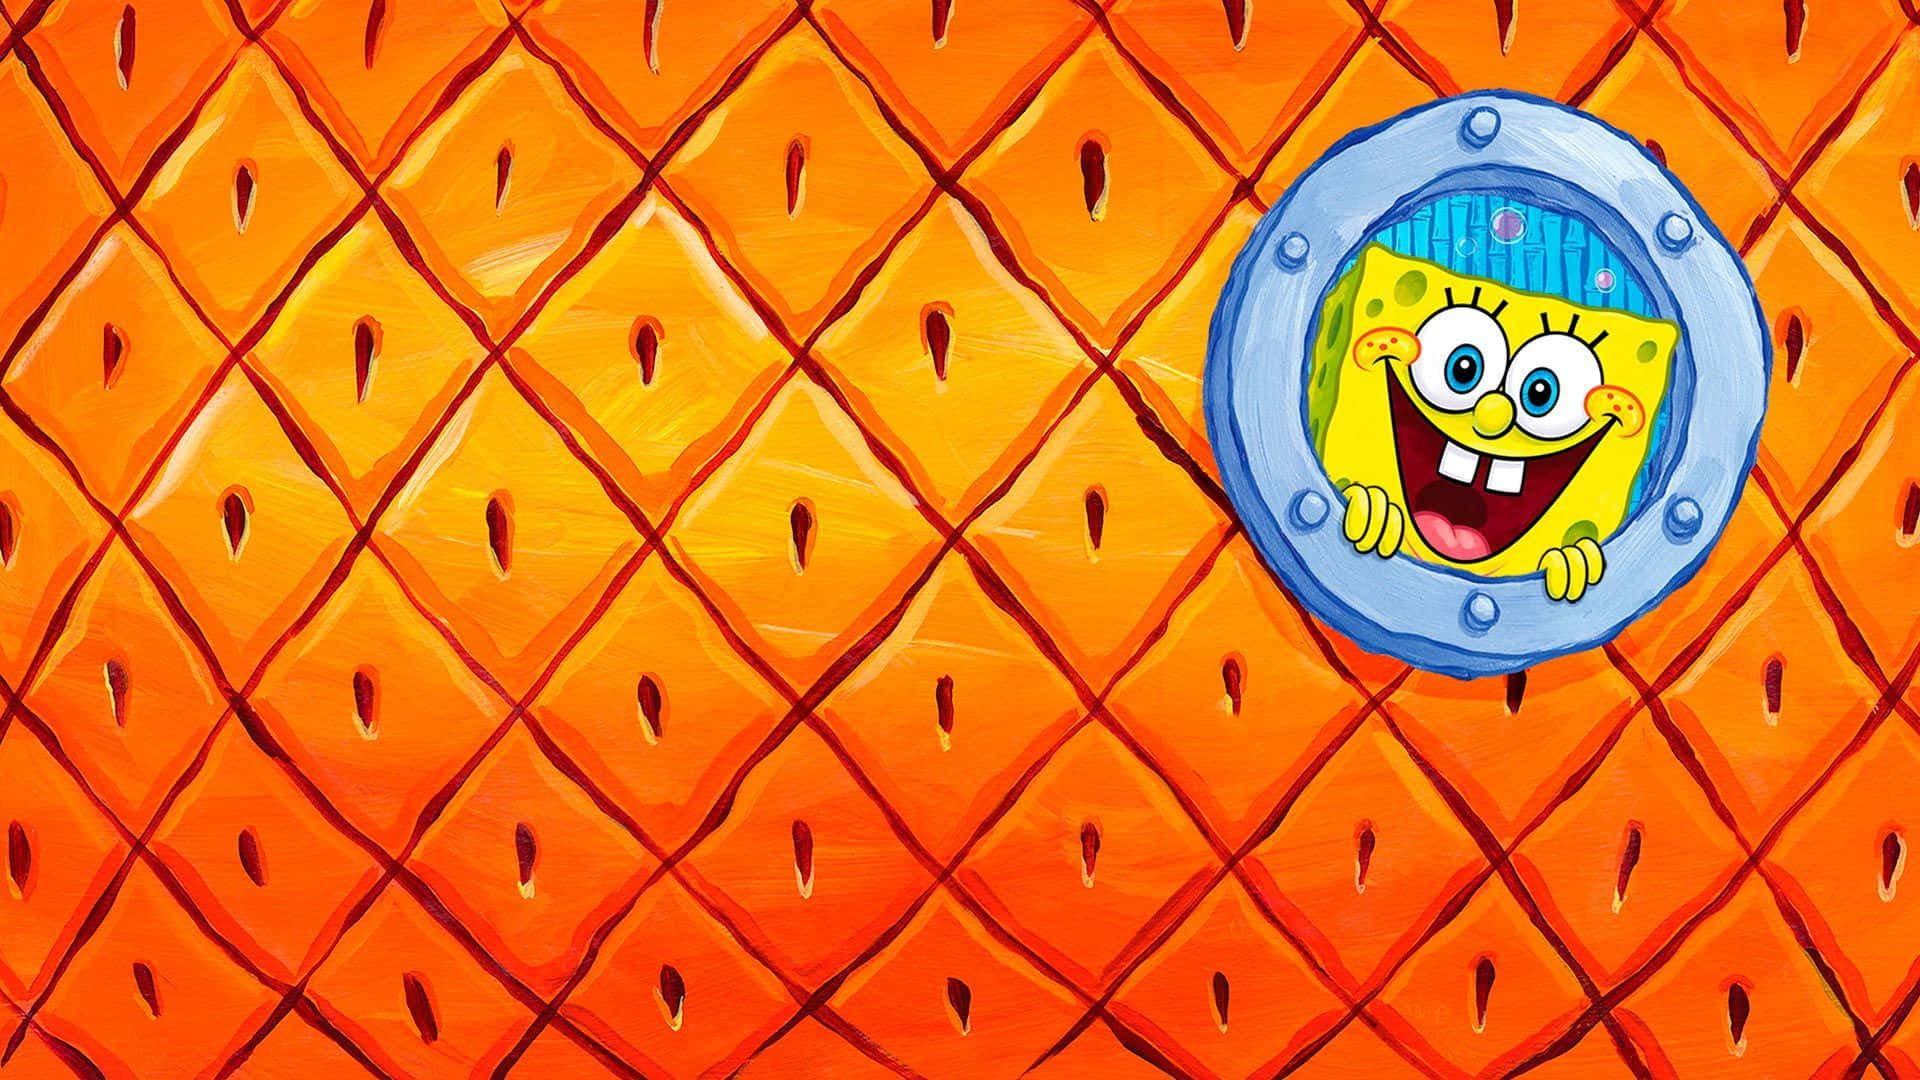 "Welcome to Spongebob's House" Wallpaper